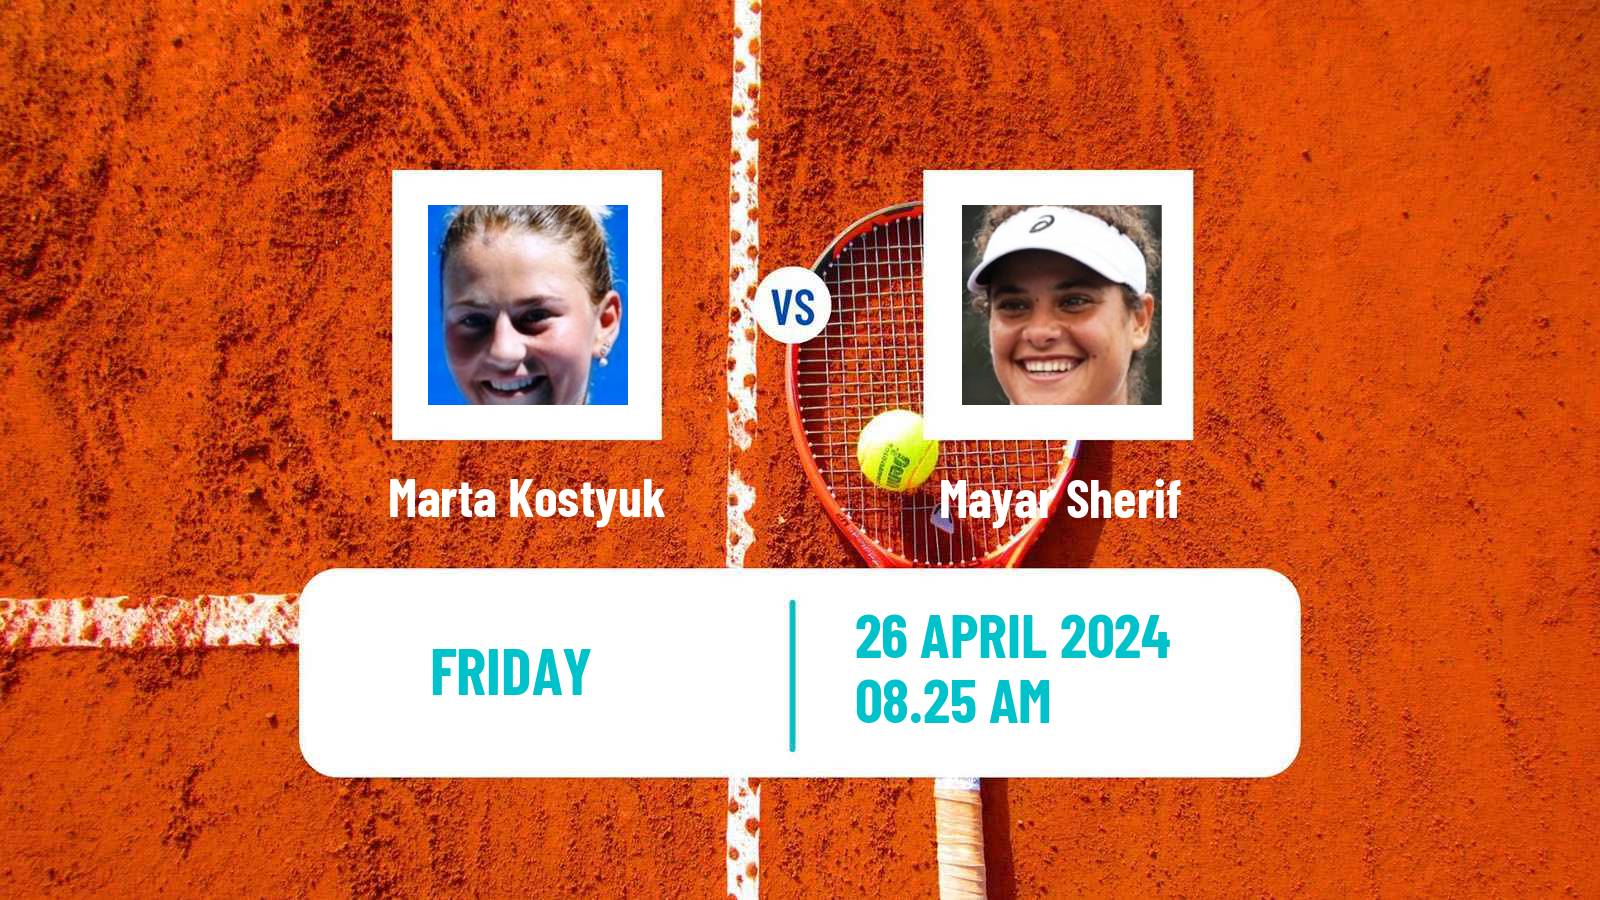 Tennis WTA Madrid Marta Kostyuk - Mayar Sherif